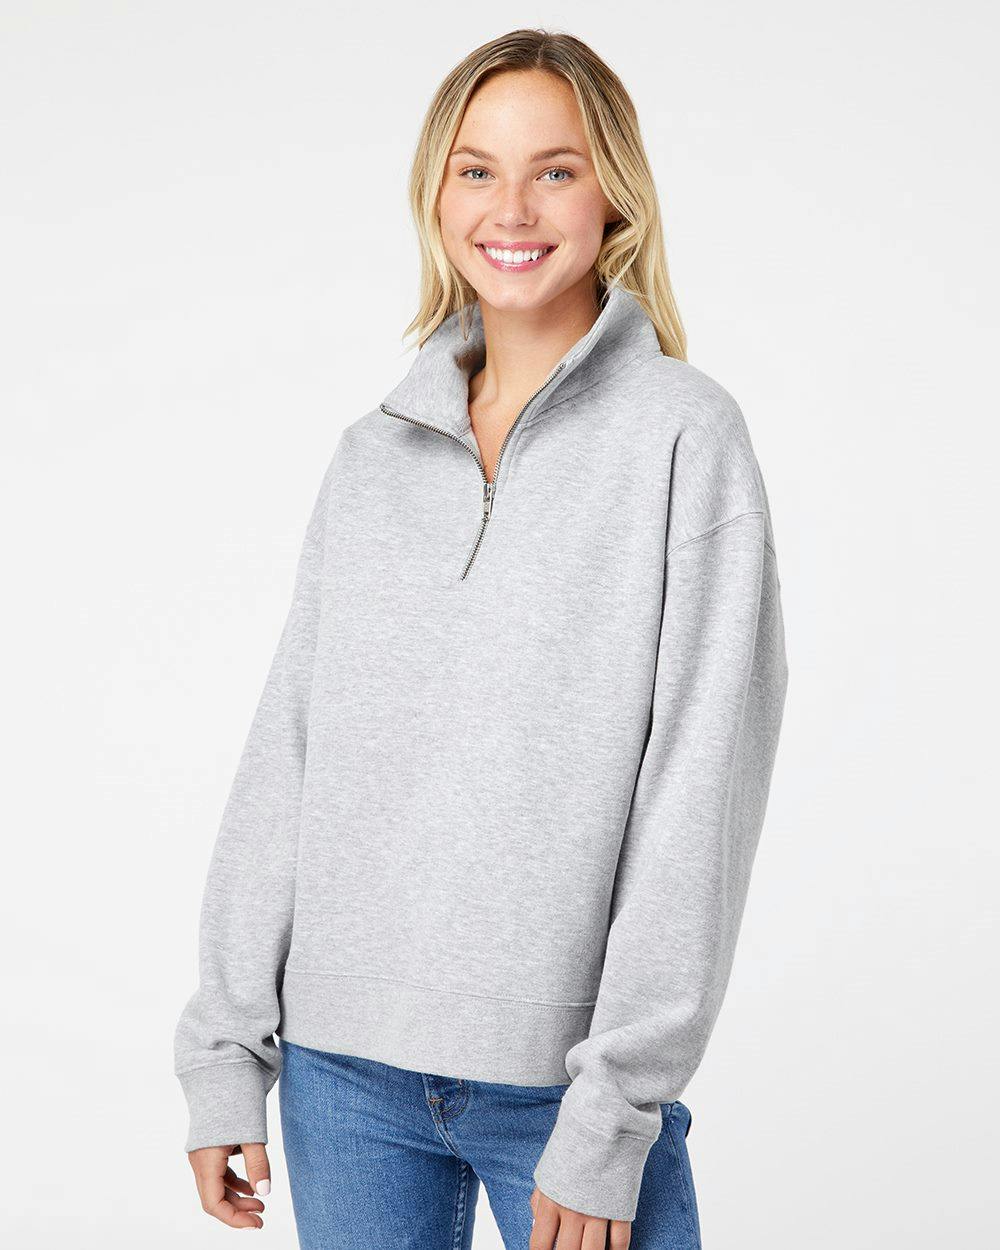 Image for Women's Sueded Fleece Quarter-Zip Sweatshirt - W22713